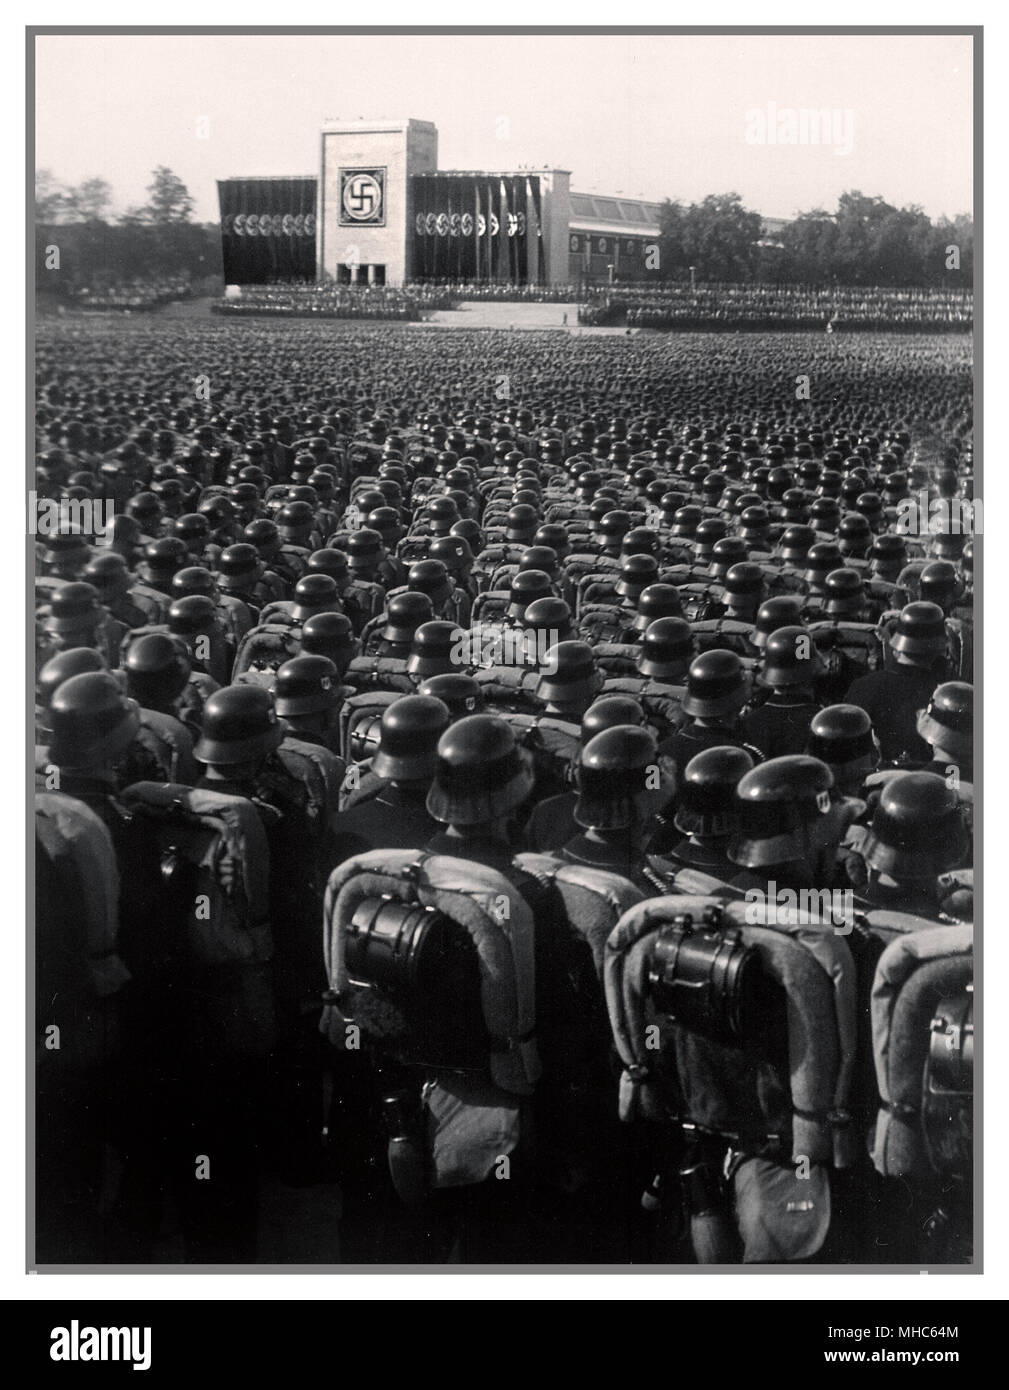 Des troupes Waffen SS nazis portant des casques poli en rangs serrées précise à l'article militaires durant un rassemblement nazi allemand avant la Deuxième Guerre mondiale, 1930 Nuremberg Banque D'Images